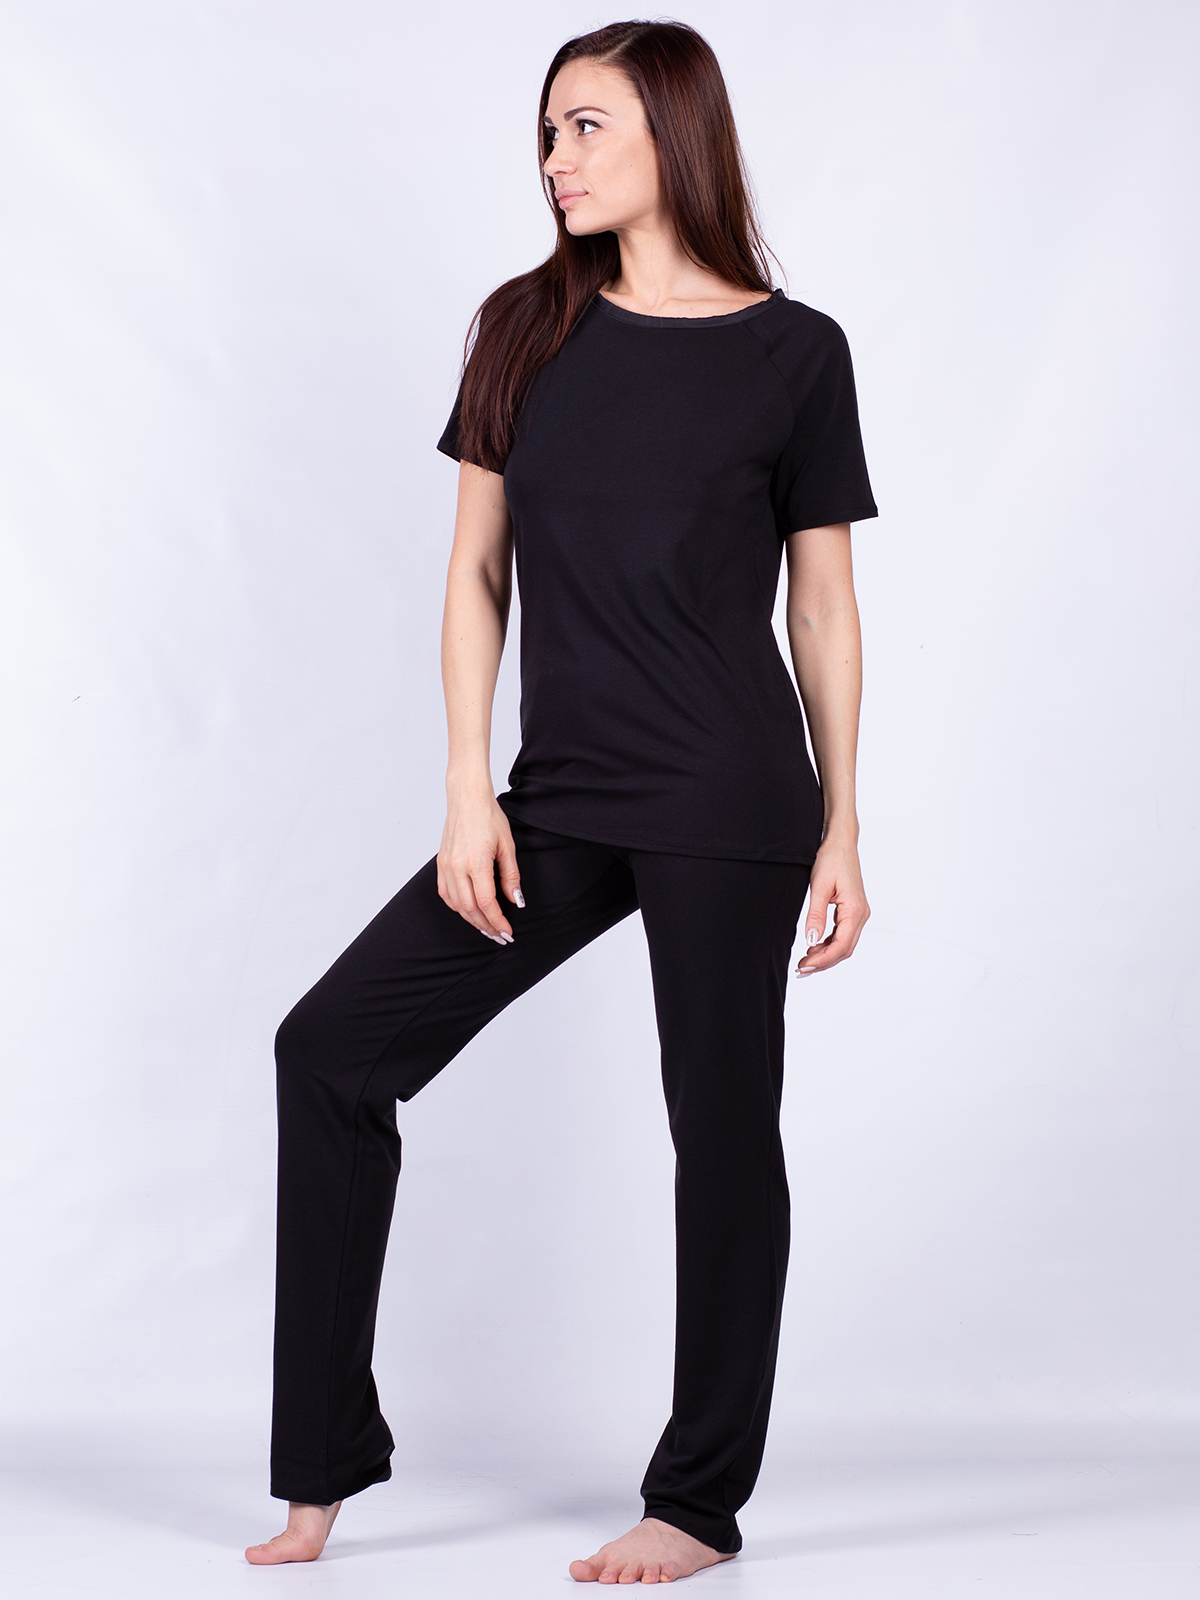 Пижама комплект женская Oxouno черная XL